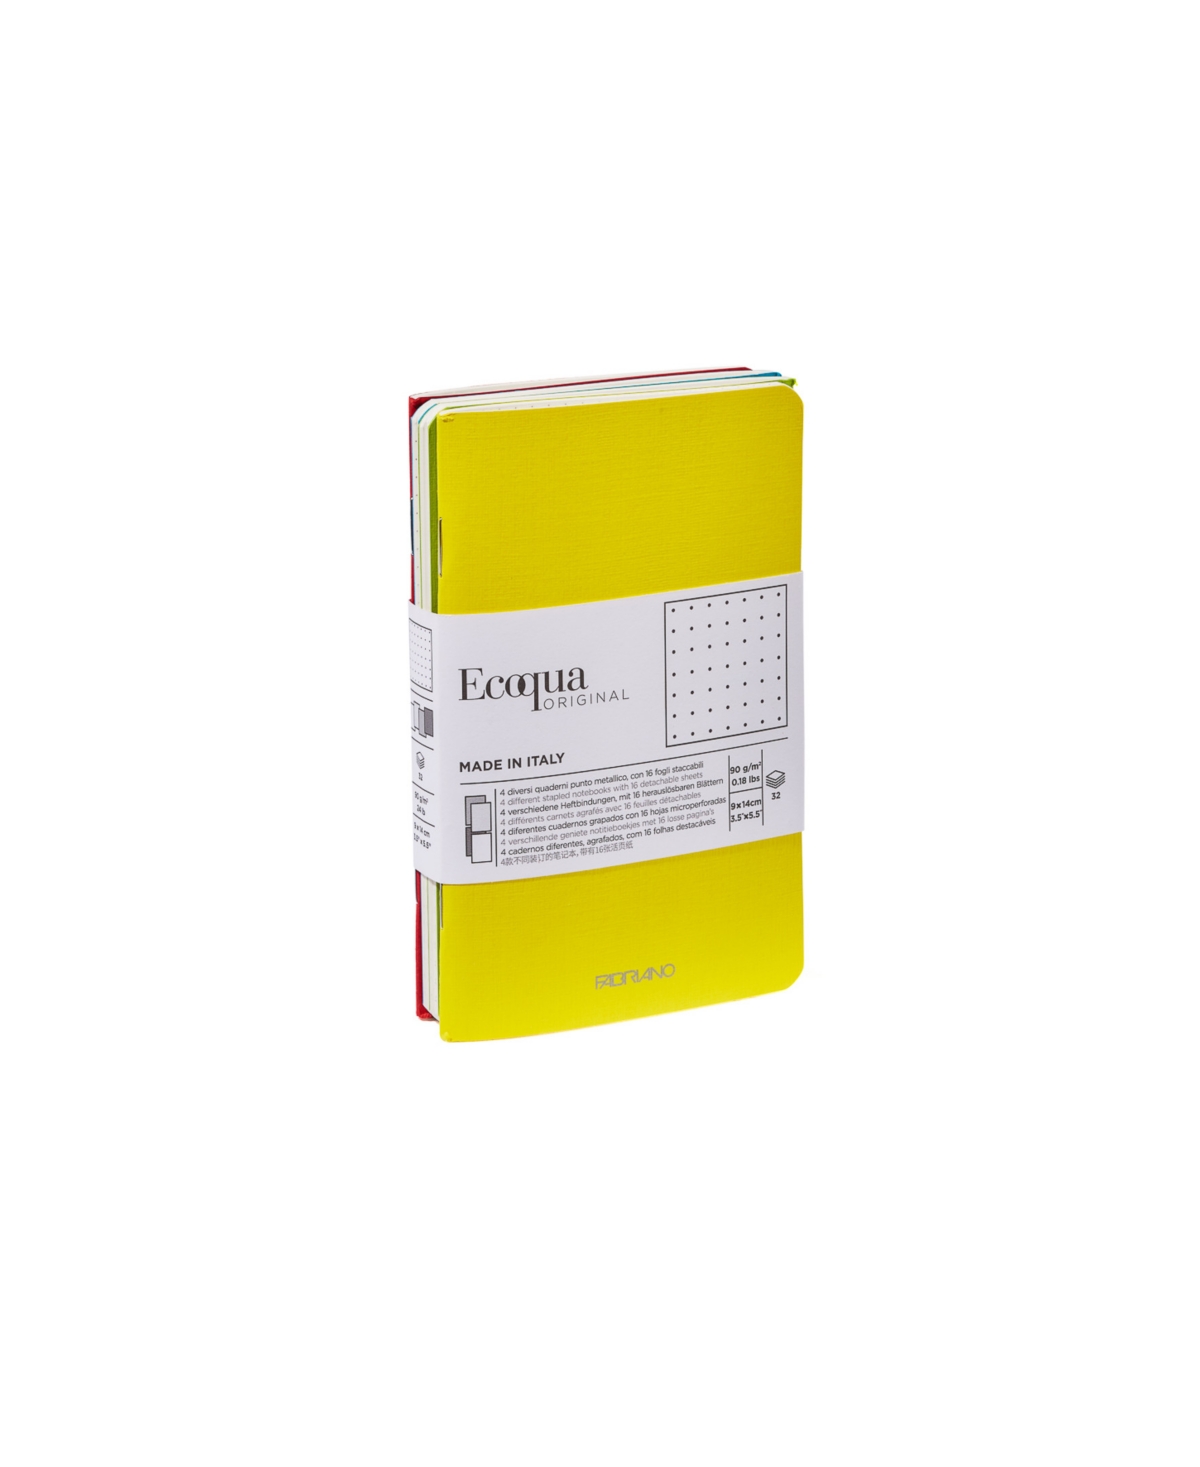 Spring Colors Ecoqua Original Pocket Staple Bound Dot Notebook 4 Piece Sets - Multi